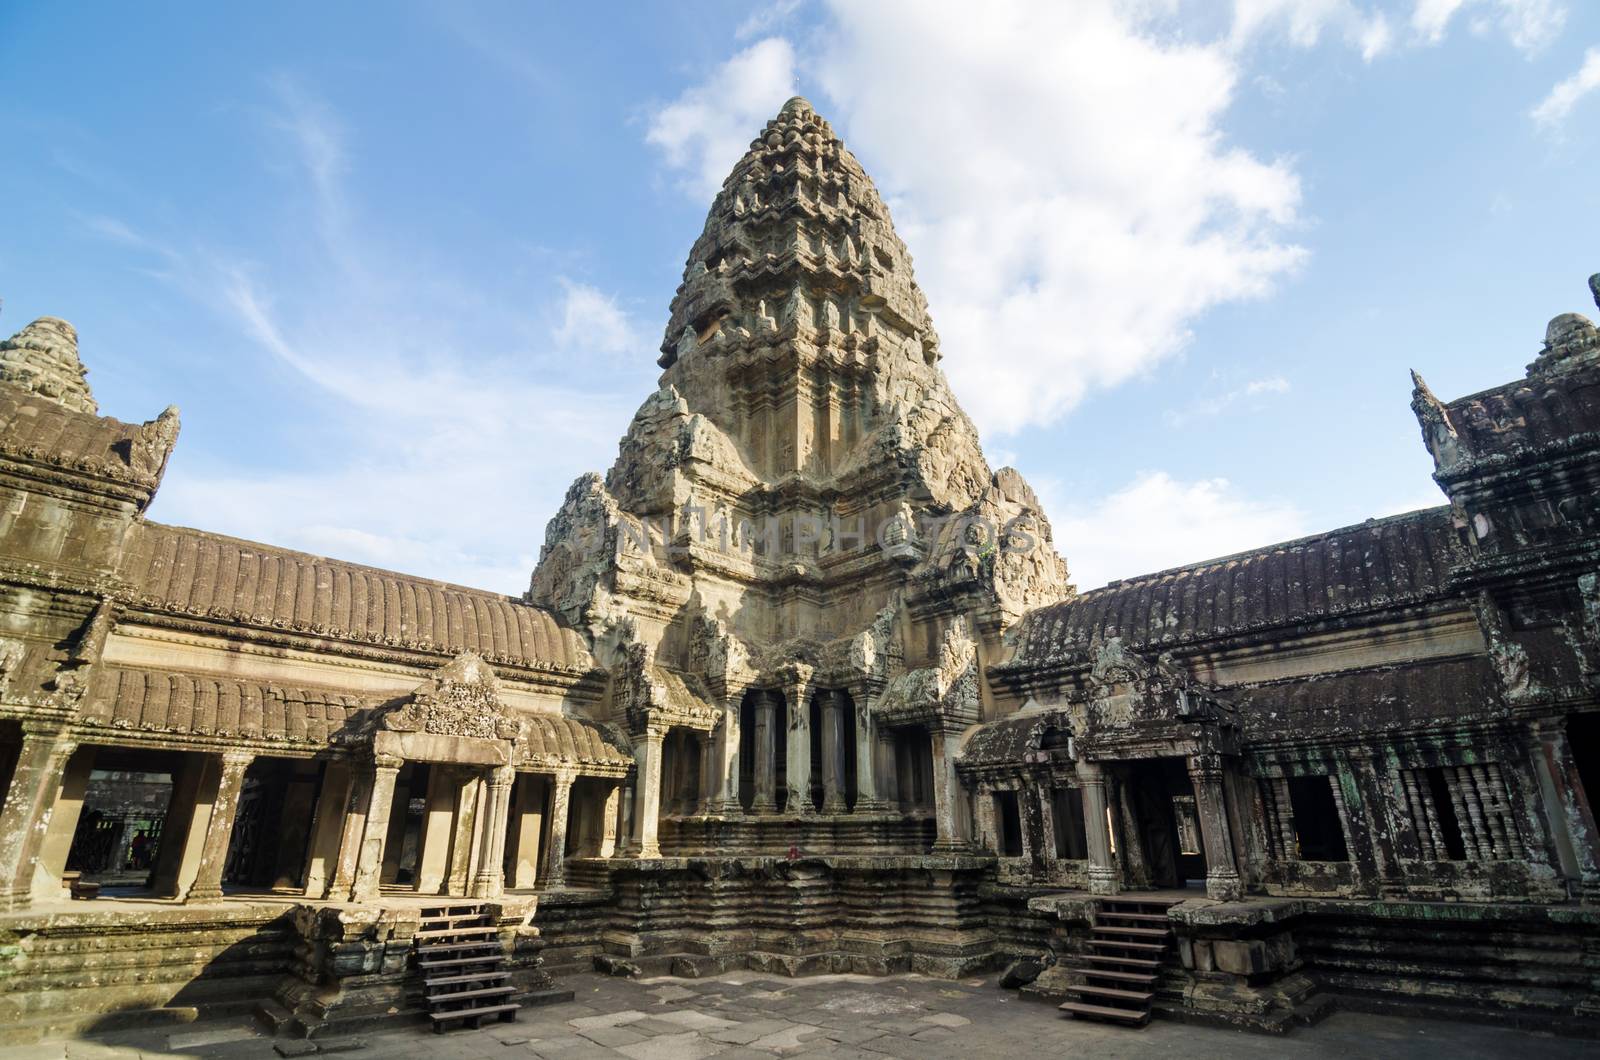 Central Tower of Angkor Wat by siraanamwong